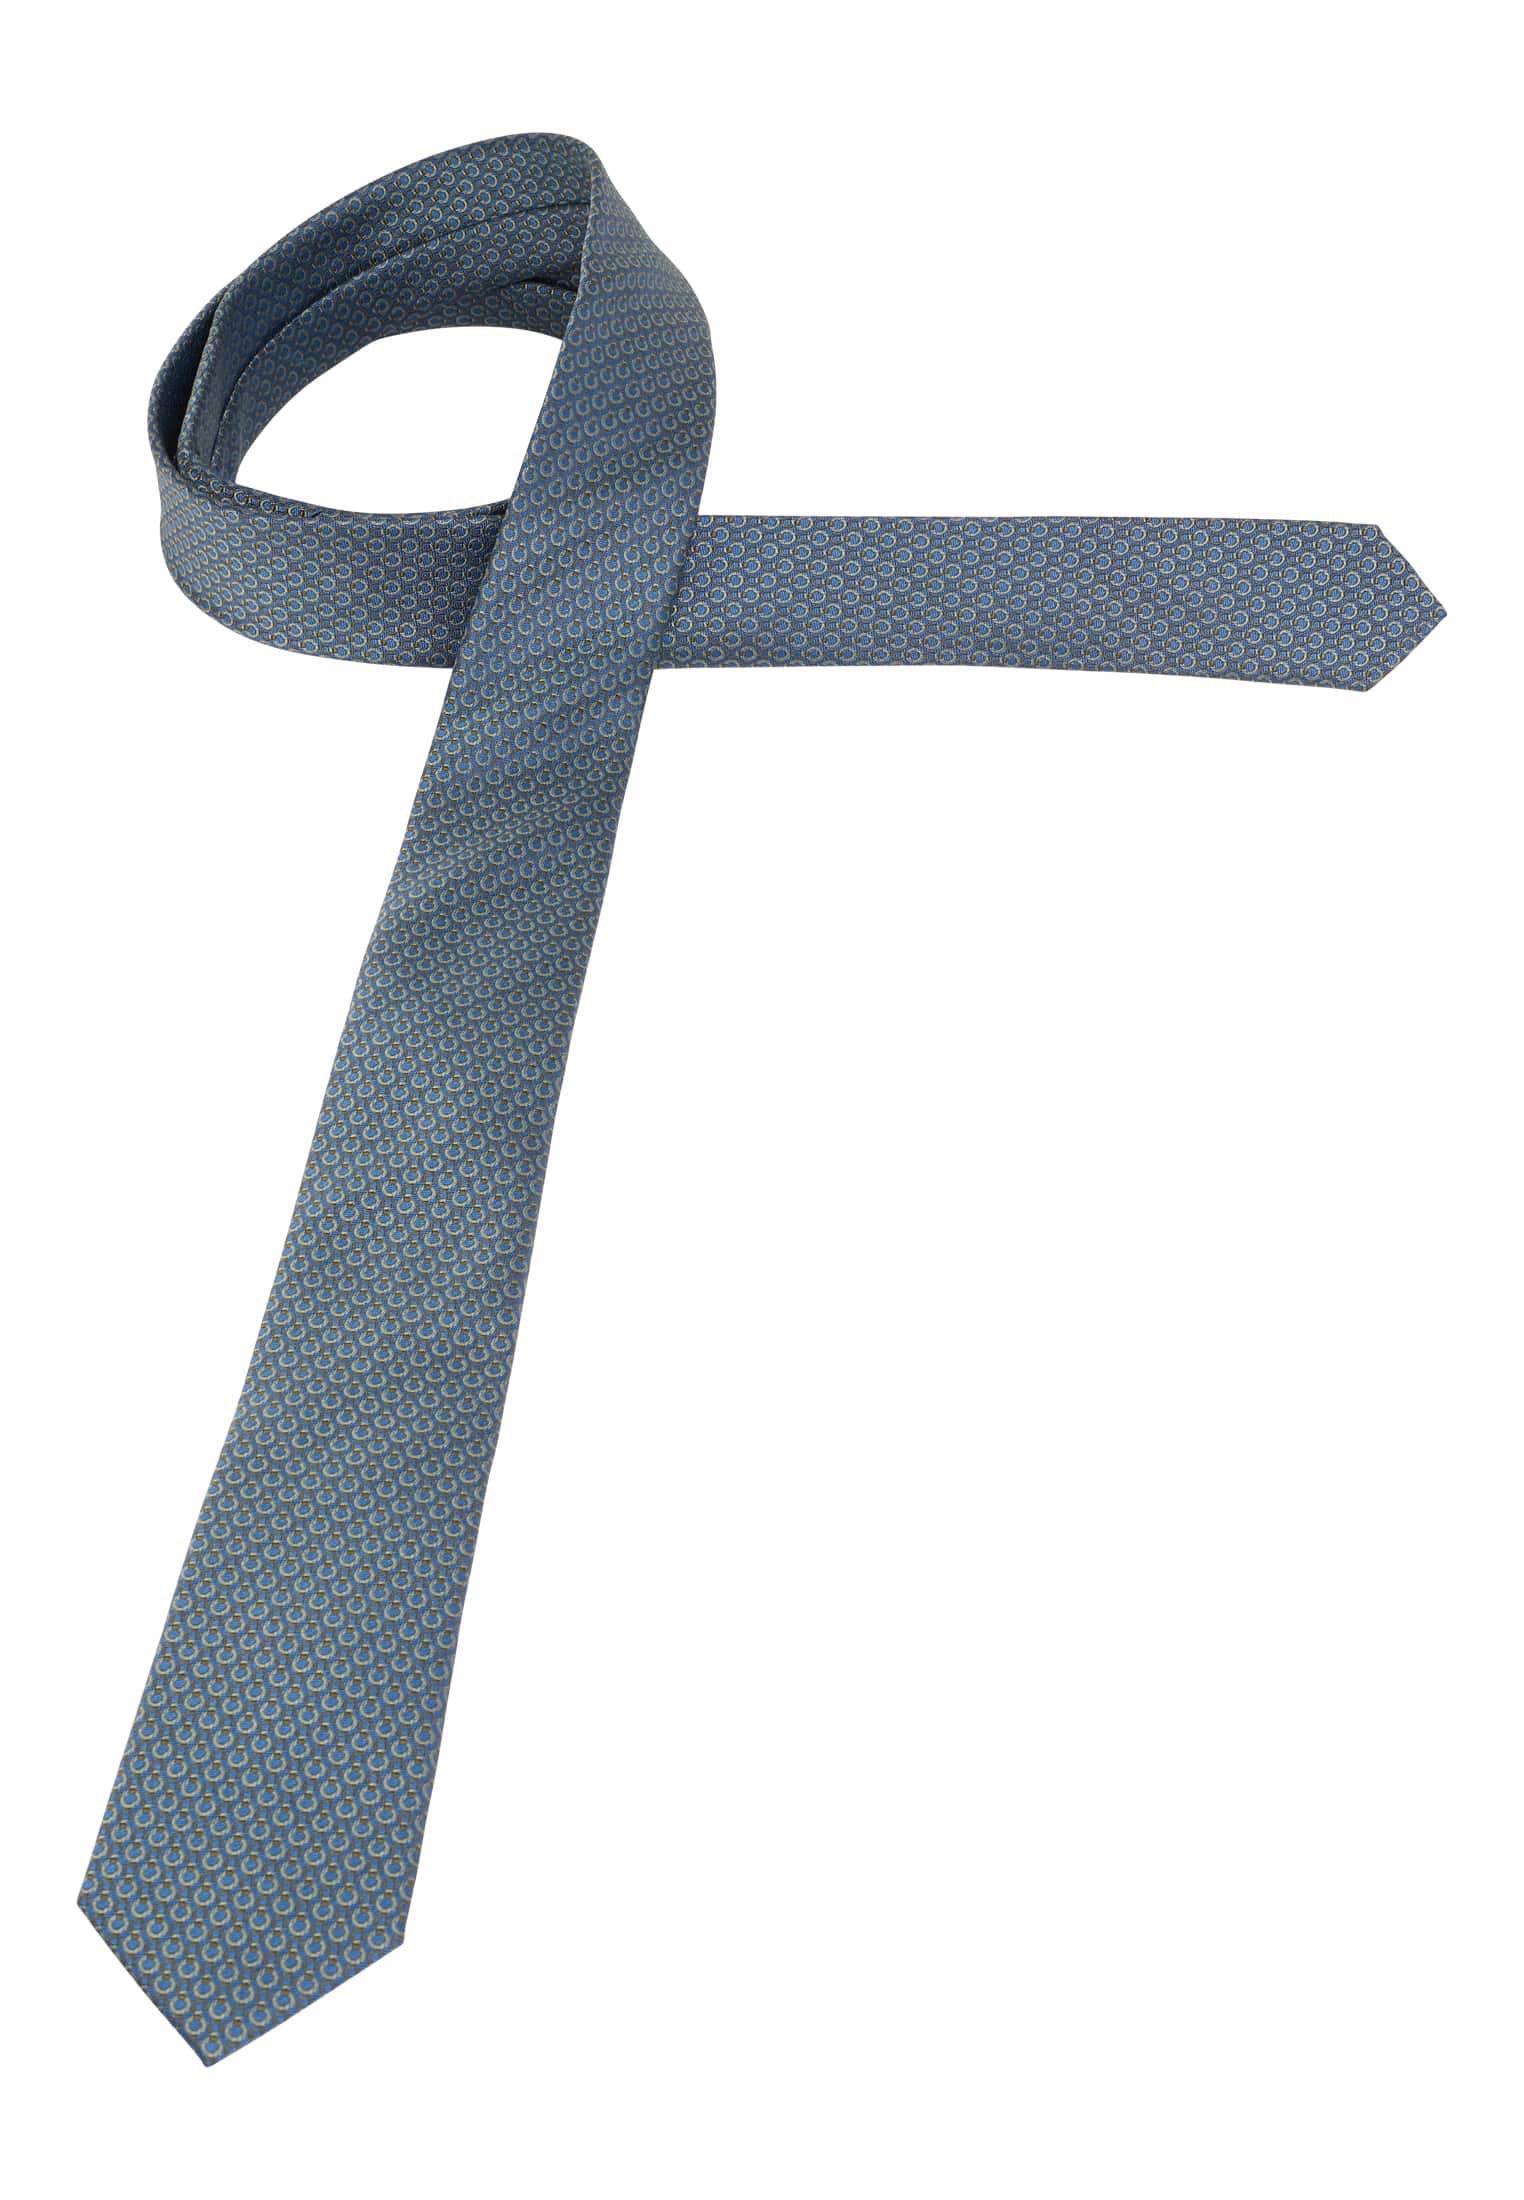 Krawatte in blau/grün strukturiert | 142 blau/grün | | 1AC01948-81-48-142